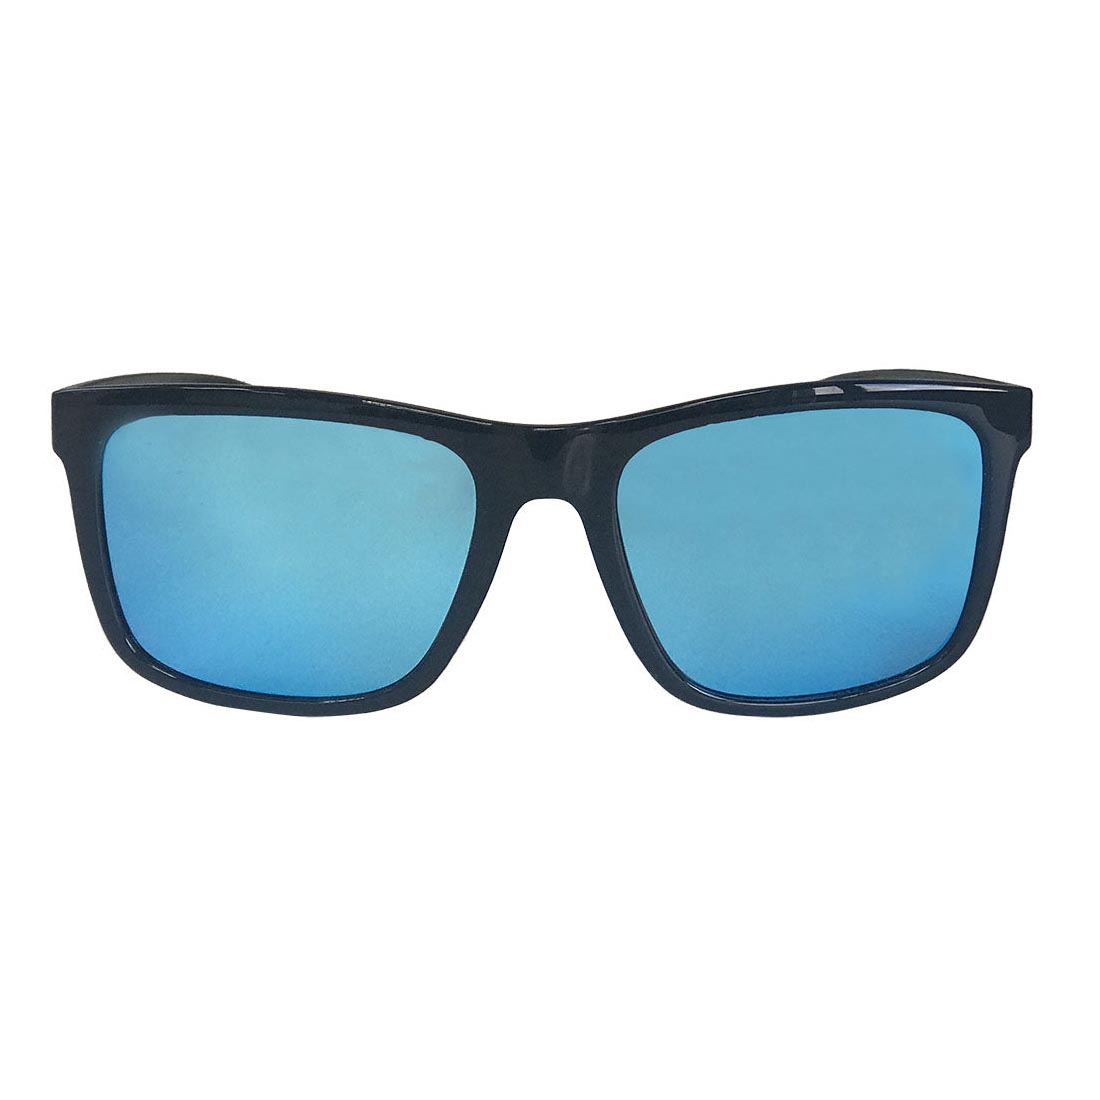 SHOGLA™ 1010 BLACK/BLUE Okulary przeciwsłoneczne Shogla.com